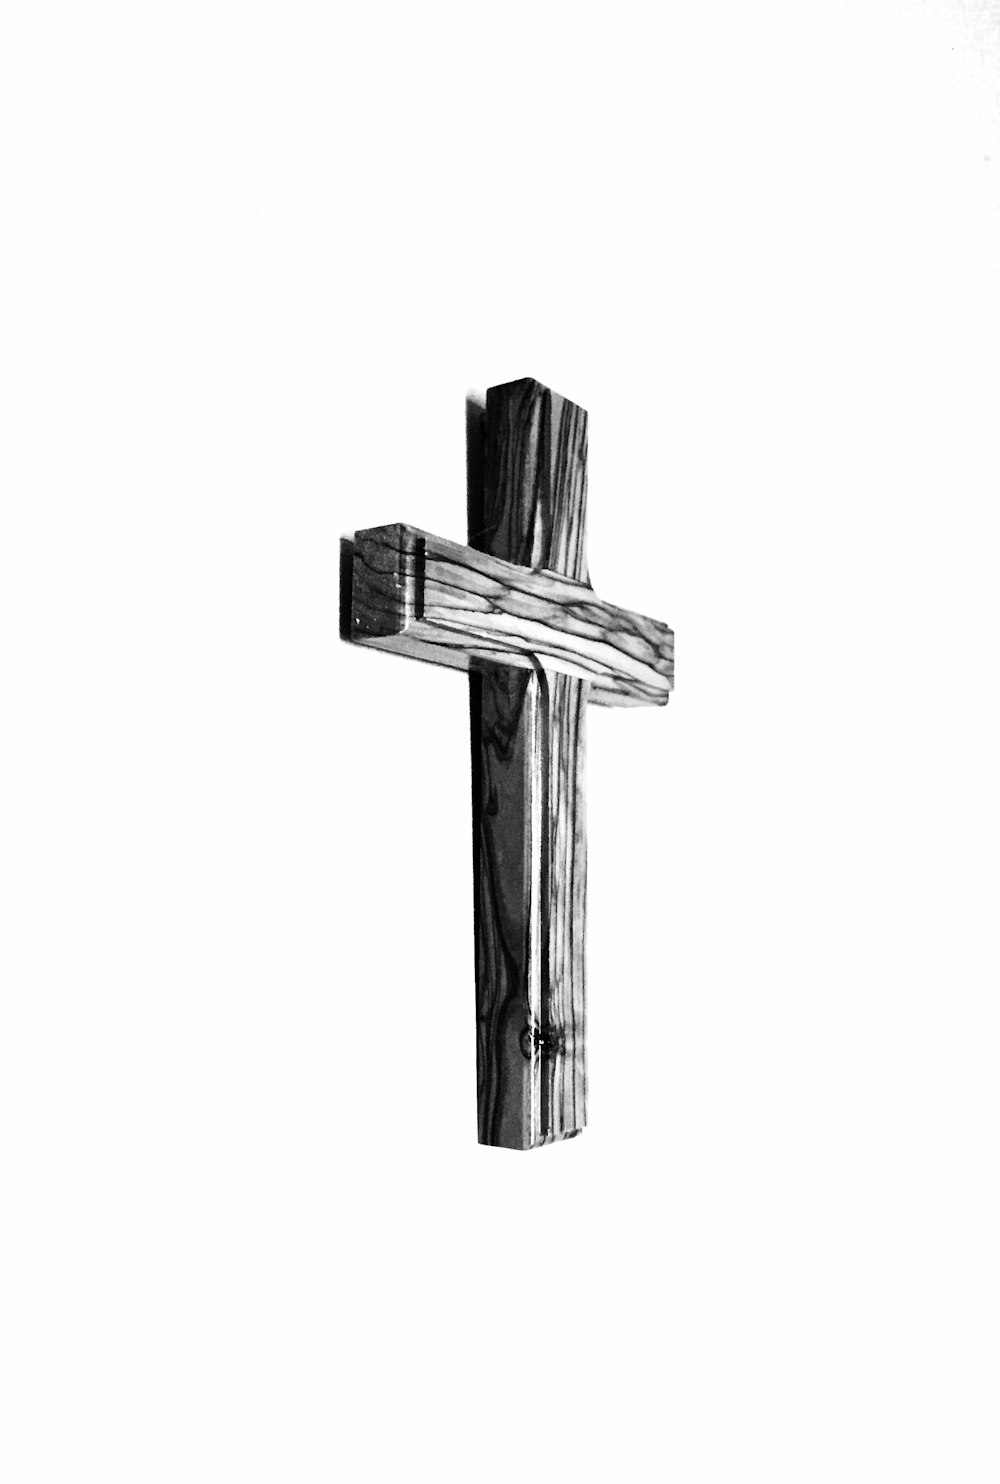 ilustração da cruz de madeira